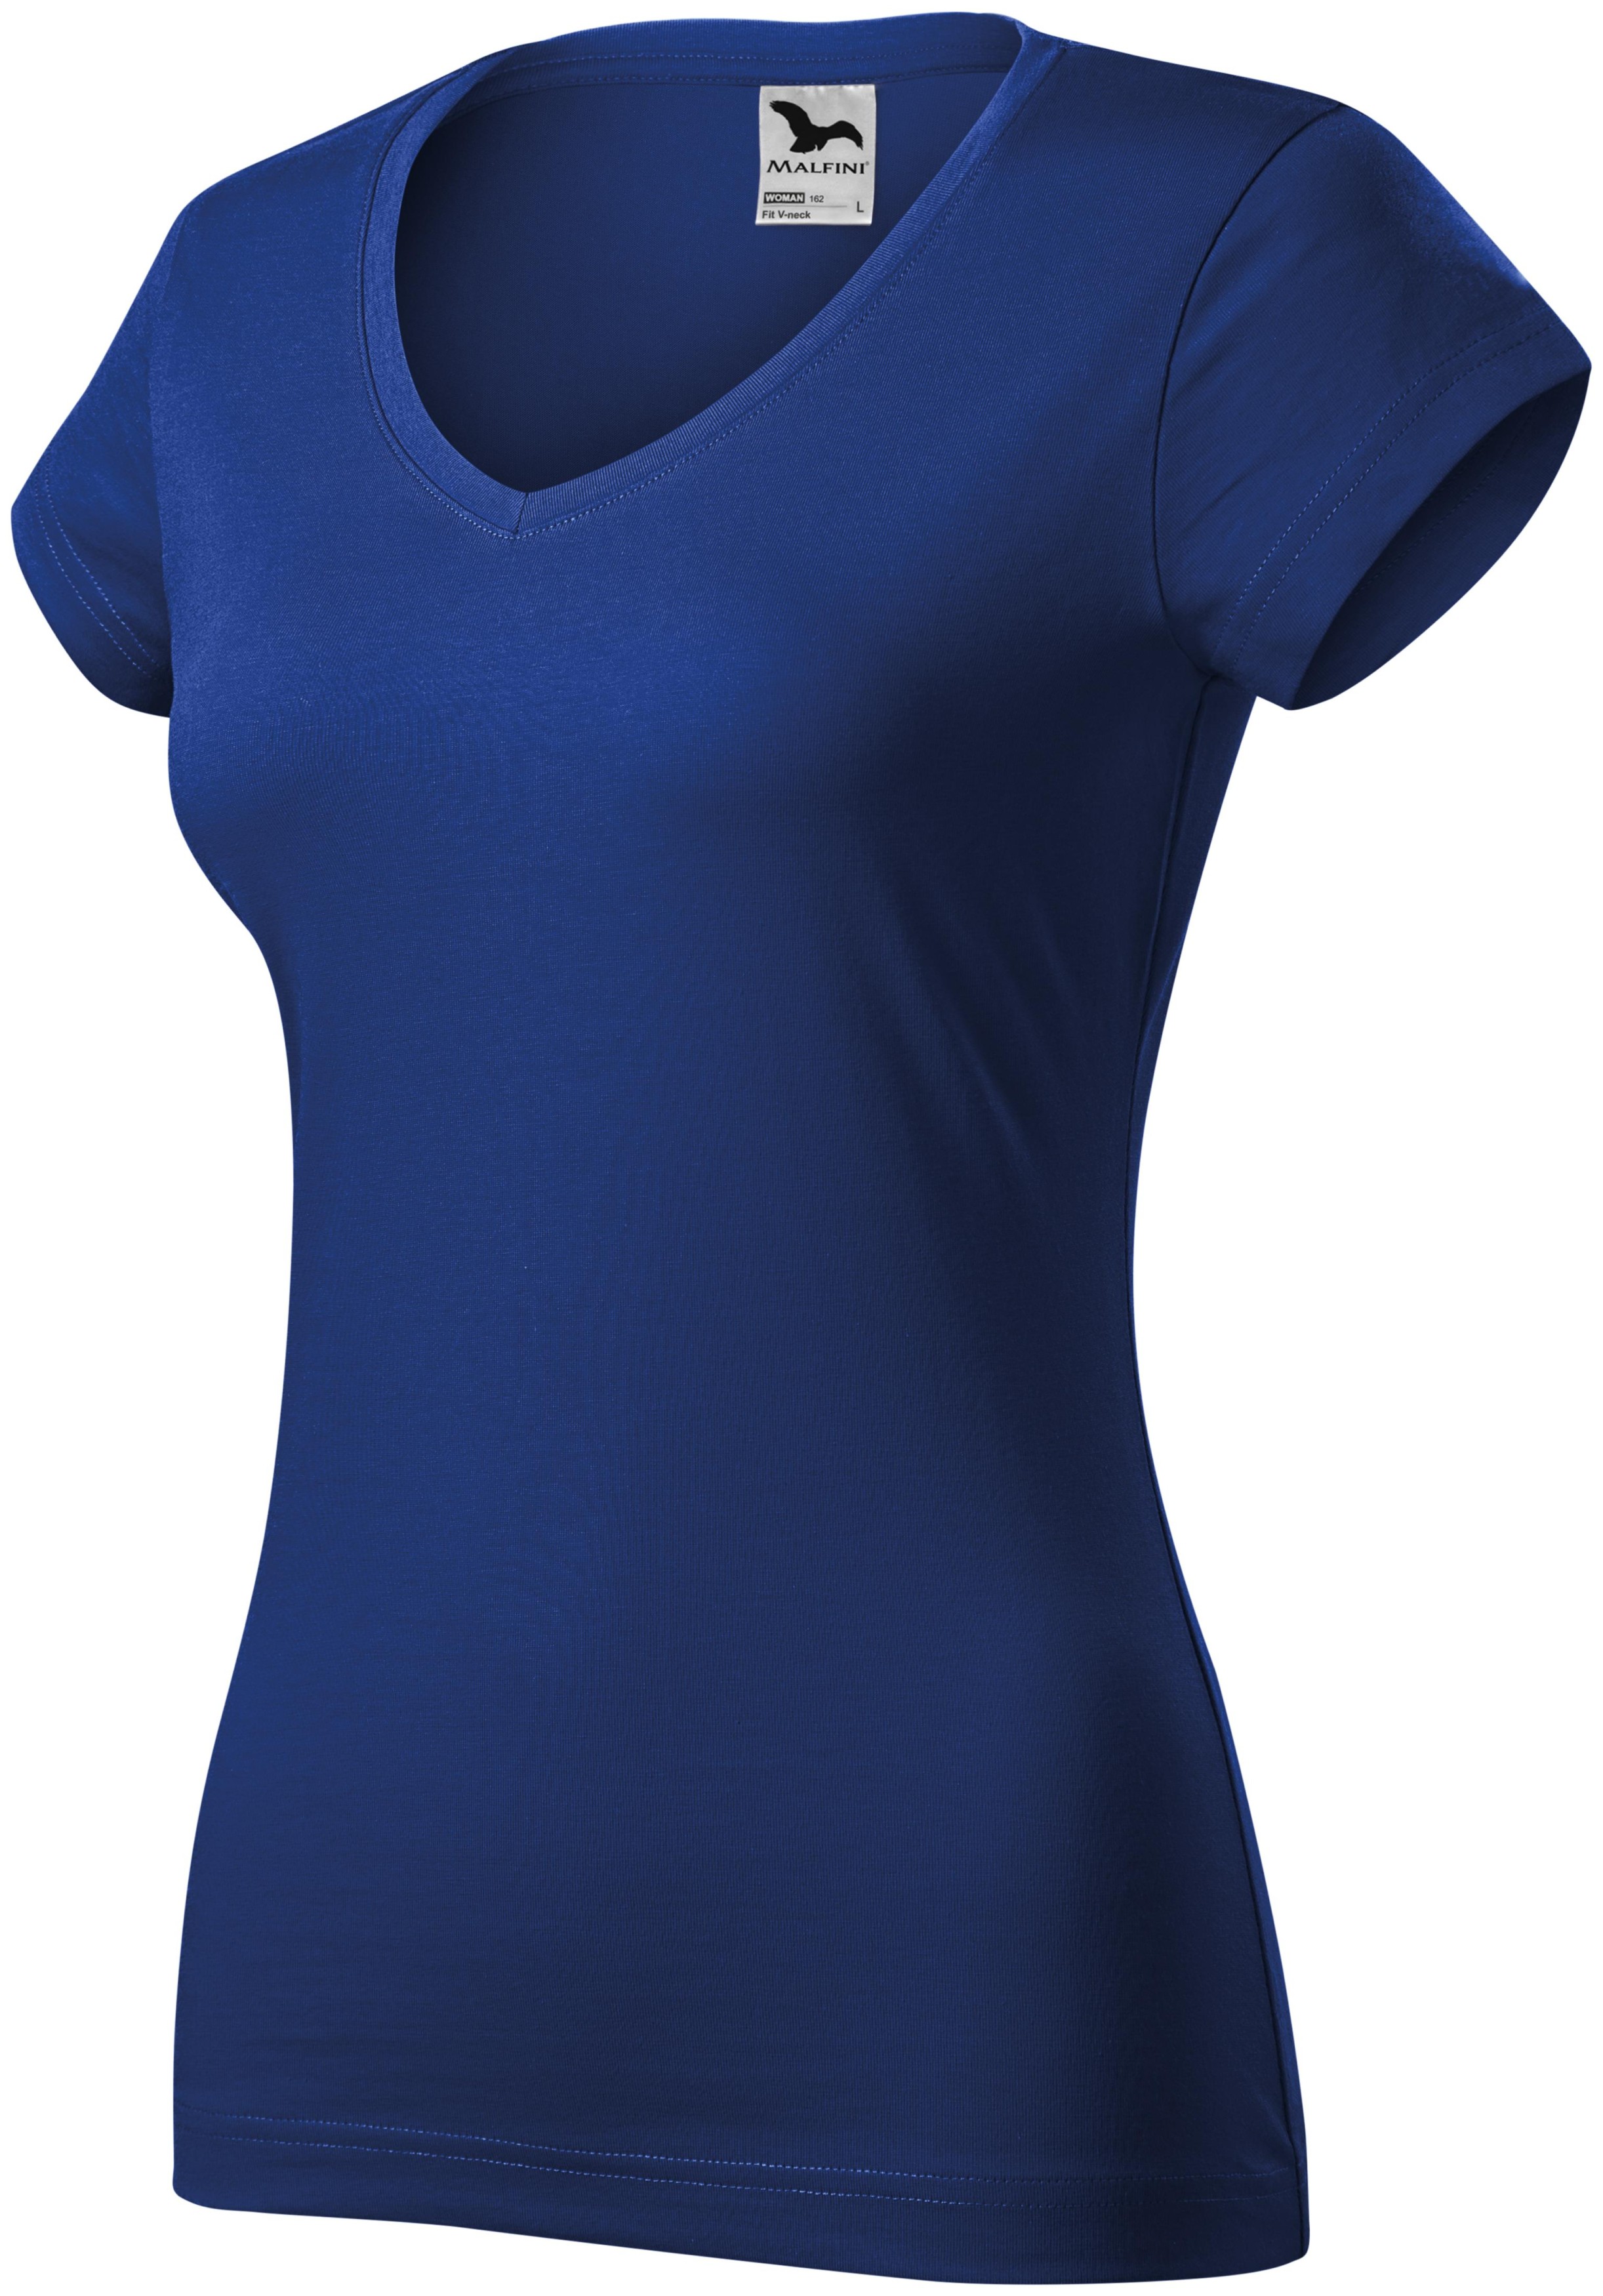 Γυναικεία μπλούζα με ντεκολτέ V, μπλε ρουά, 2XL